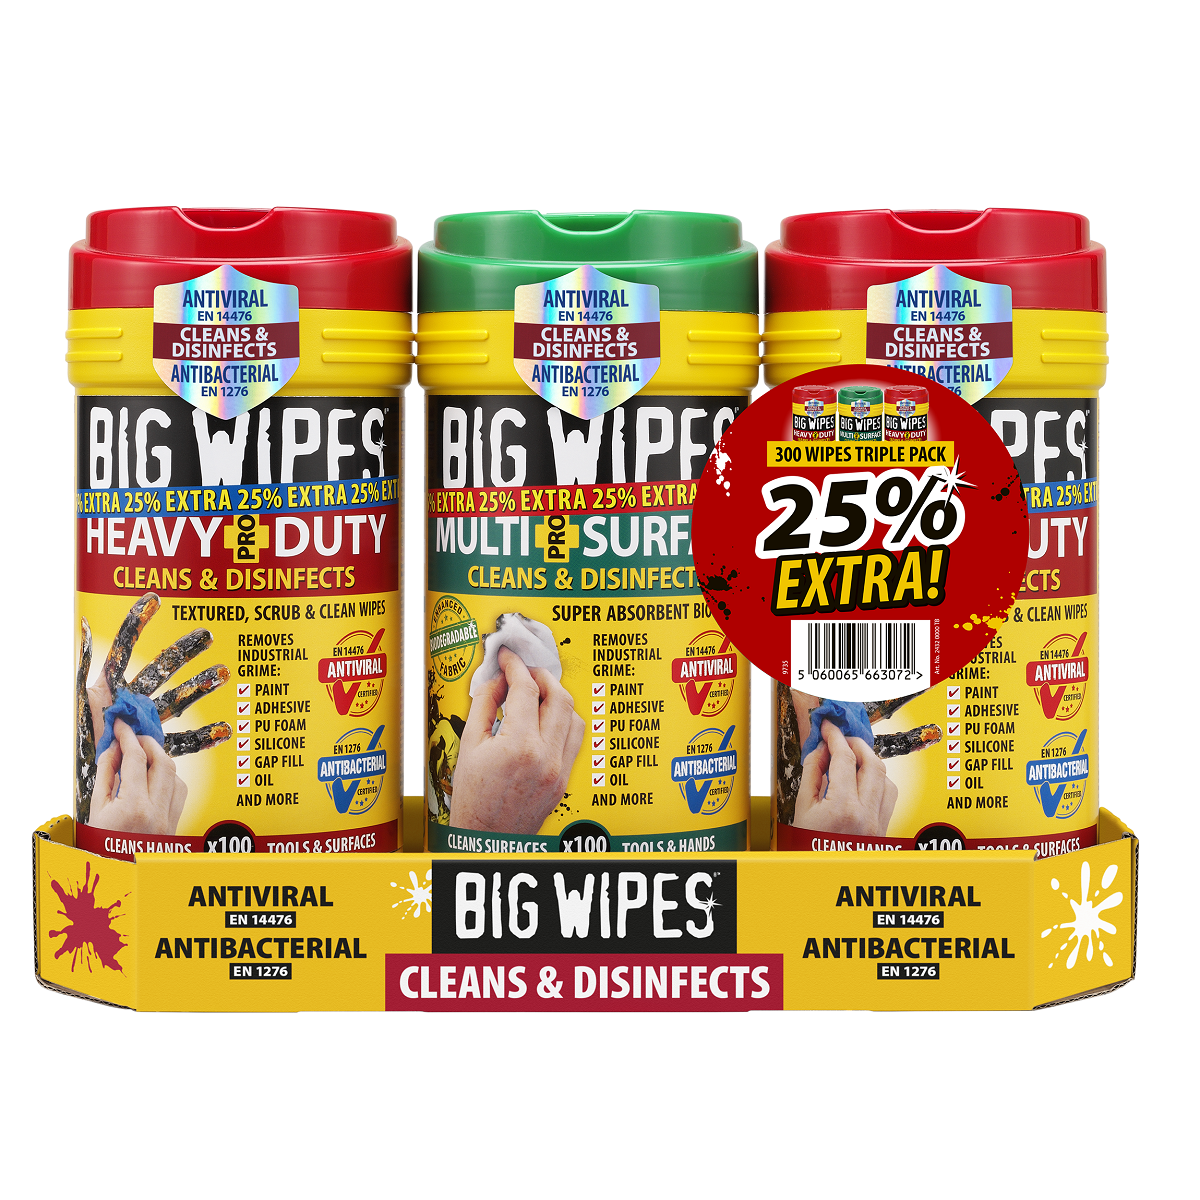 Big Wipes Heavy Duty 8” X 12” Wipes